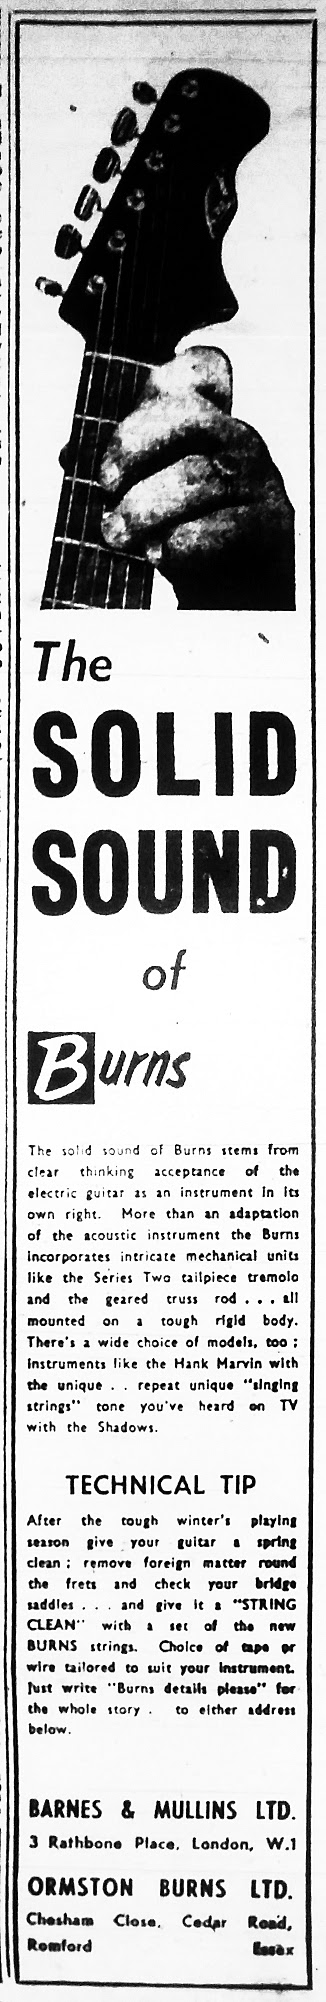 Burns Solid Sound advert